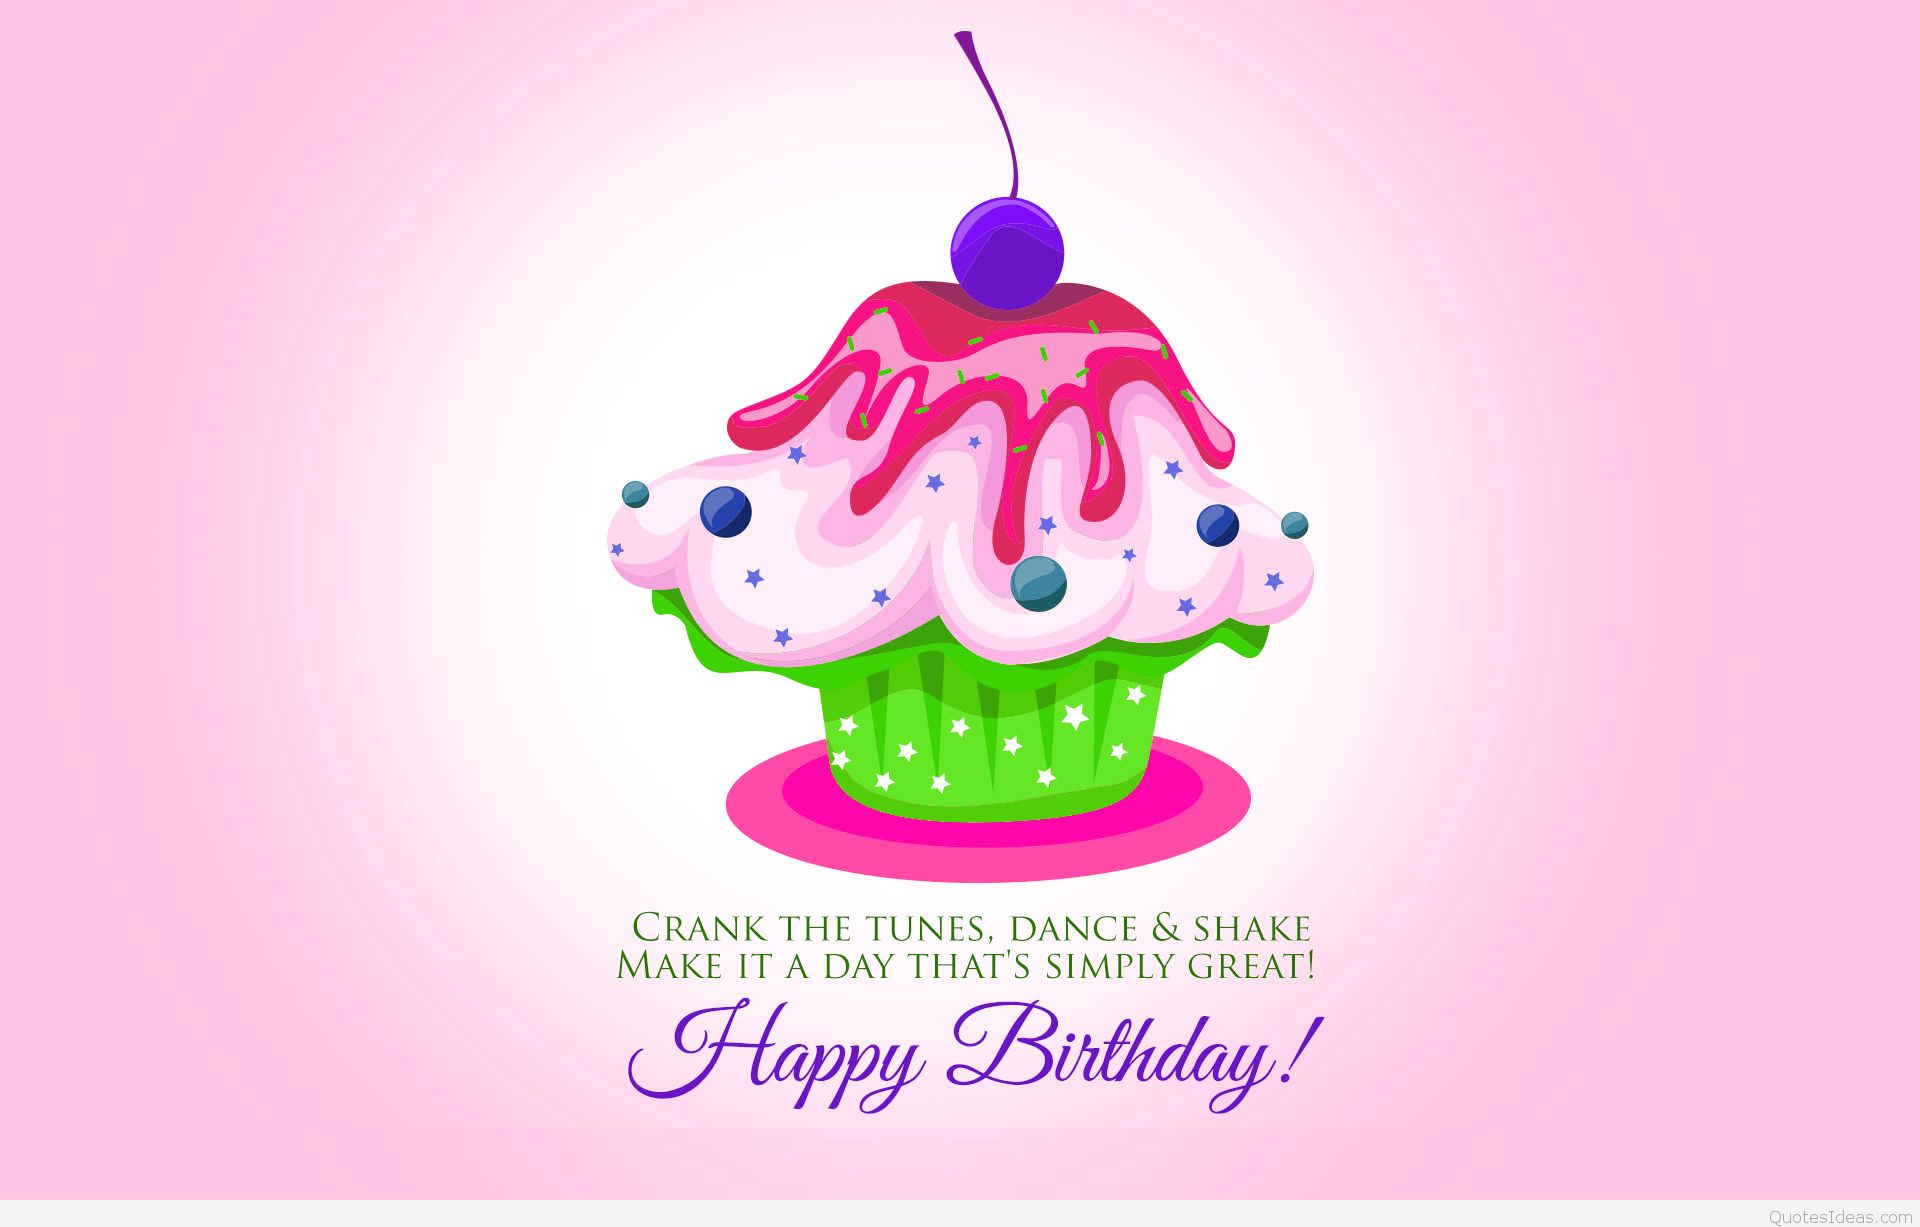 buon compleanno sfondo full hd,rosa,candela di compleanno,font,dolce,glassatura